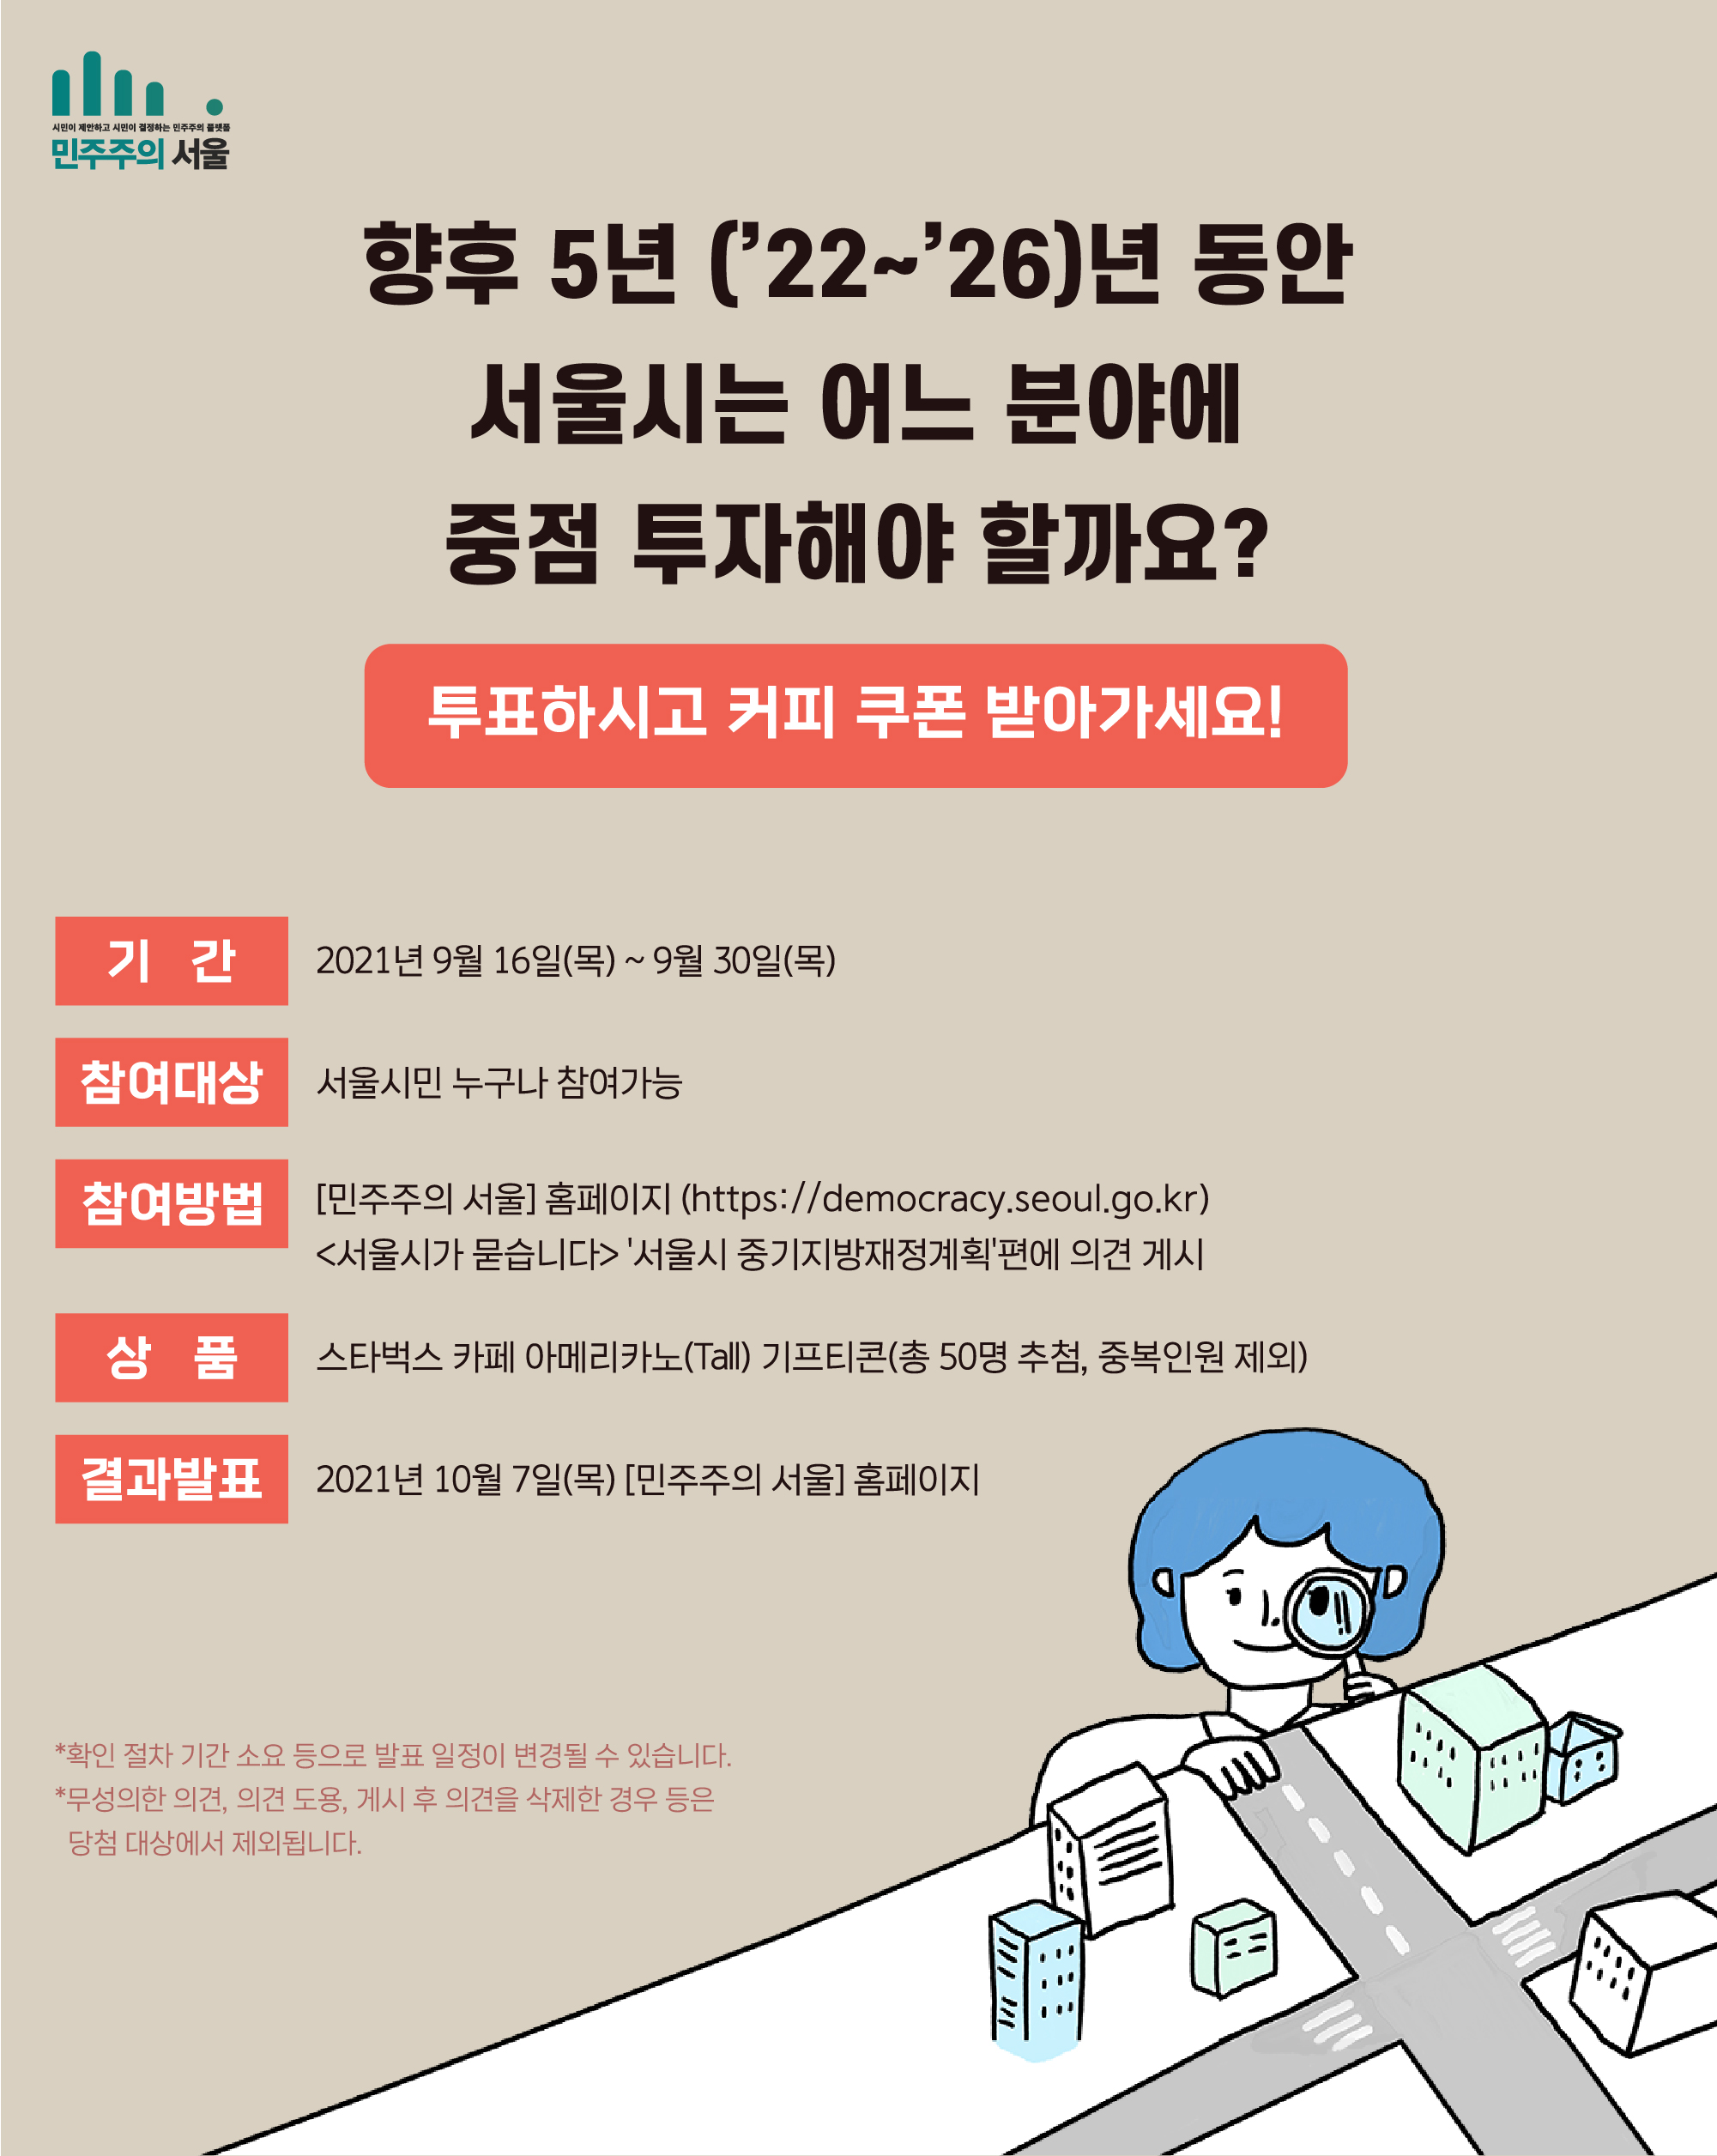 향후 5년 (22~26)년 동안 서울시는 어느 분야에 중점 투자해야 할까요? 투표하시고 커피 쿠폰 받아가세요! 기간 : 2021년 9월16일(목)~9월30일(목) 참여대상 : 서울시민 누구나 참여가능 참여방법: 「민주주의 서울」홈페이지 (https://democracy.seoul.go.kr)<서우릿가 묻습니다 > 서울시 중기지방재정계획편에 의견 게시 상품 : 스타벅스 카페 아메리카노(Tall) 기프티콘(총 50명 추첨, 중복인원 제외) 결과발표 2021년 10월 7일(목)「민주주의 서울 」홈페이지 *확인 절차 기간 소요 등으로 발표 일정이 변경될 수 있습니다. *무성의한 의견, 의견 도용, 개시 후 의견을 삭제한 경우 등은 당첨 대상에서 제외됩니다.